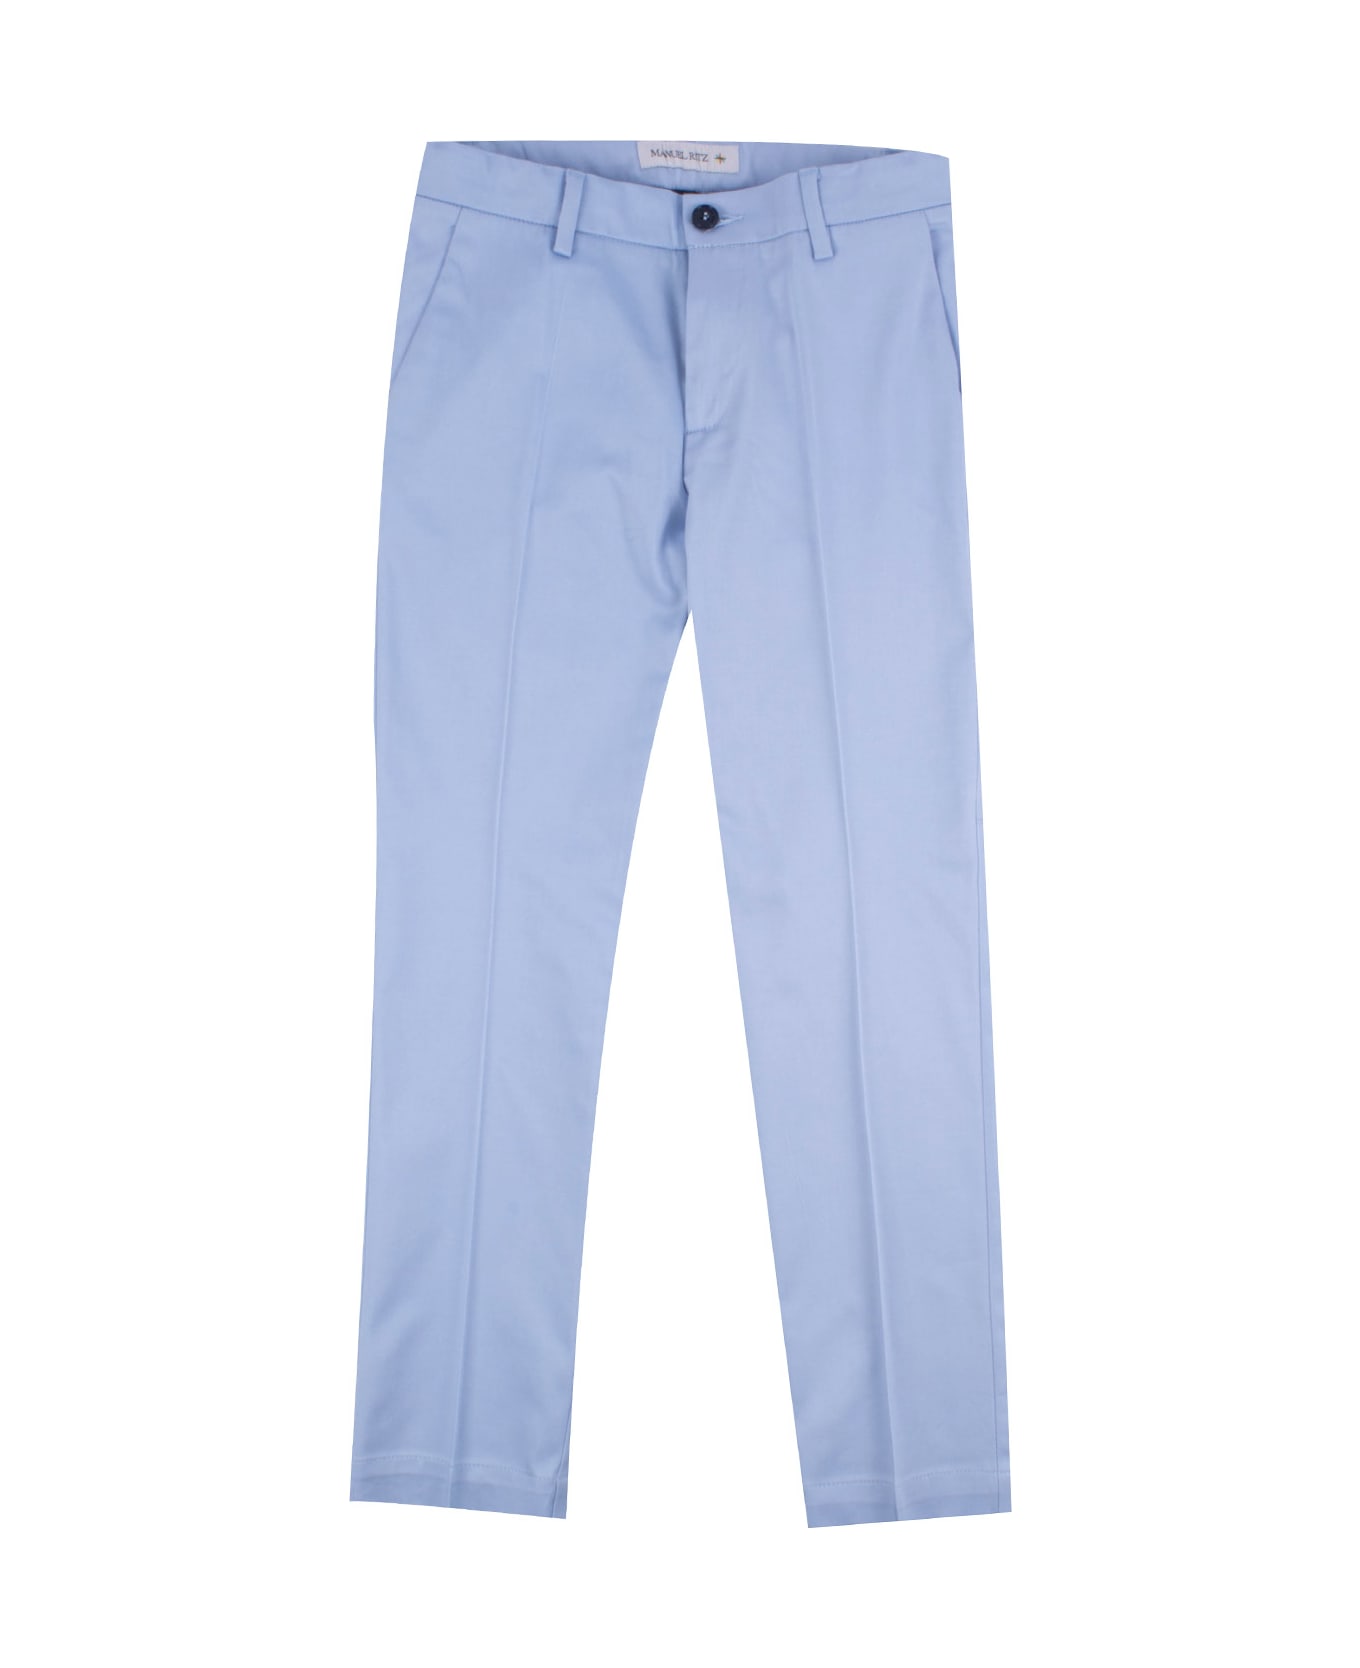 Manuel Ritz Cotton Pants - Light blue